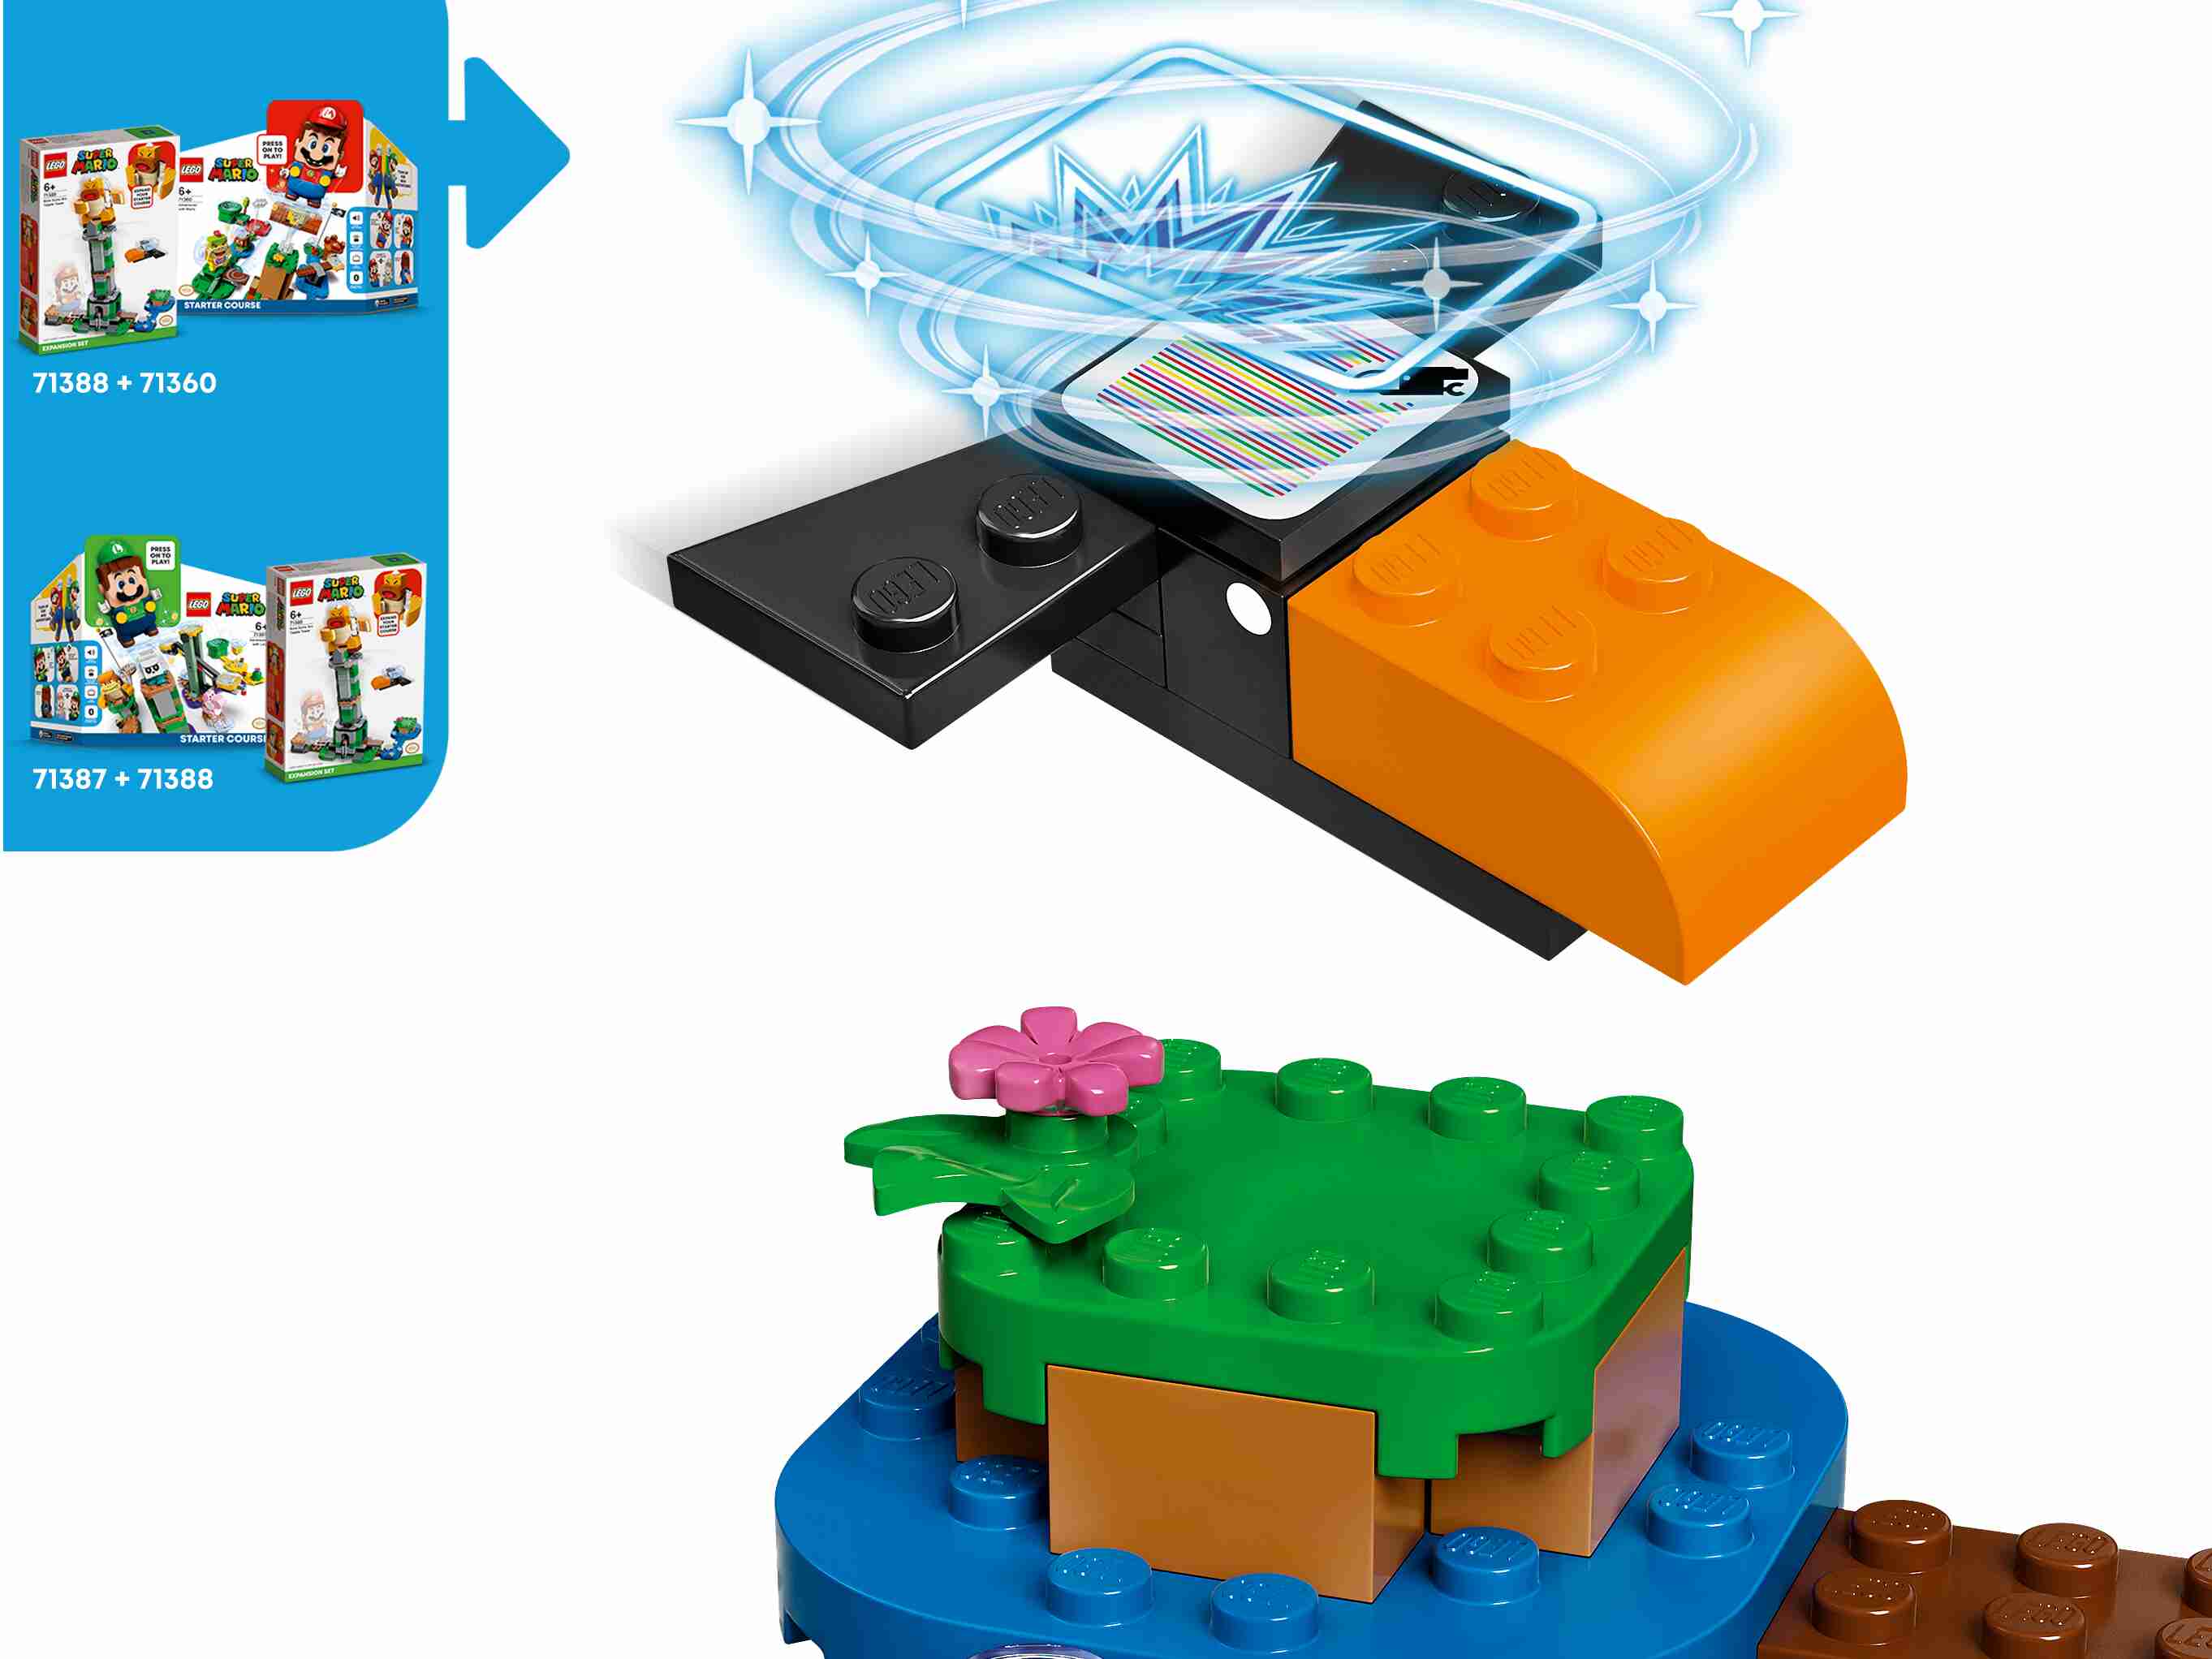 LEGO 71388 Super Mario Kippturm mit Sumo-Bruder-Boss – Erweiterungsset